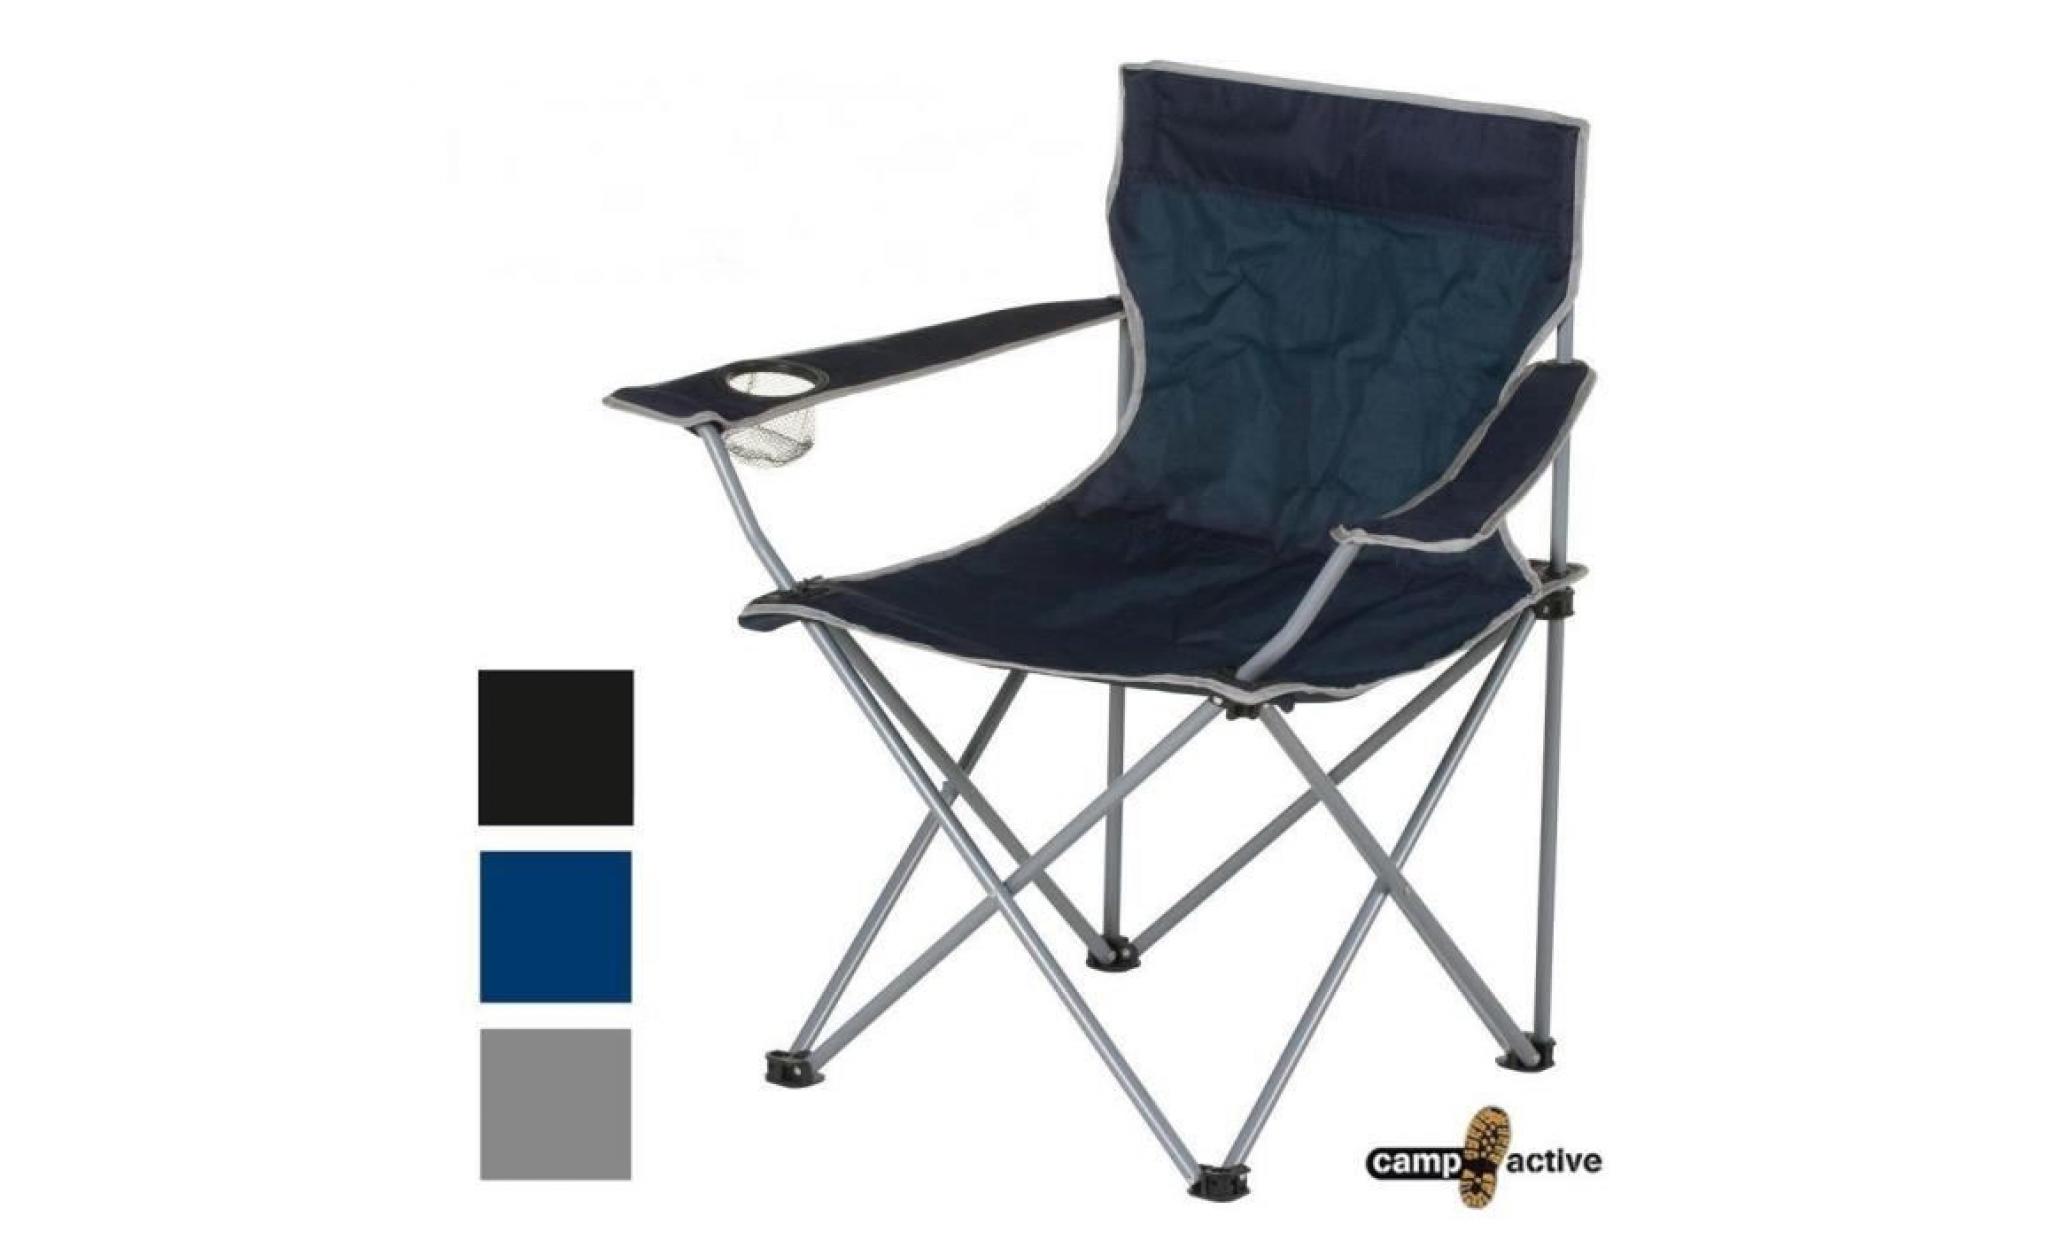 couleur noire : chaise fauteuil telescopique pour camping peche plage ou jardin pliant avec housse de transport pliable